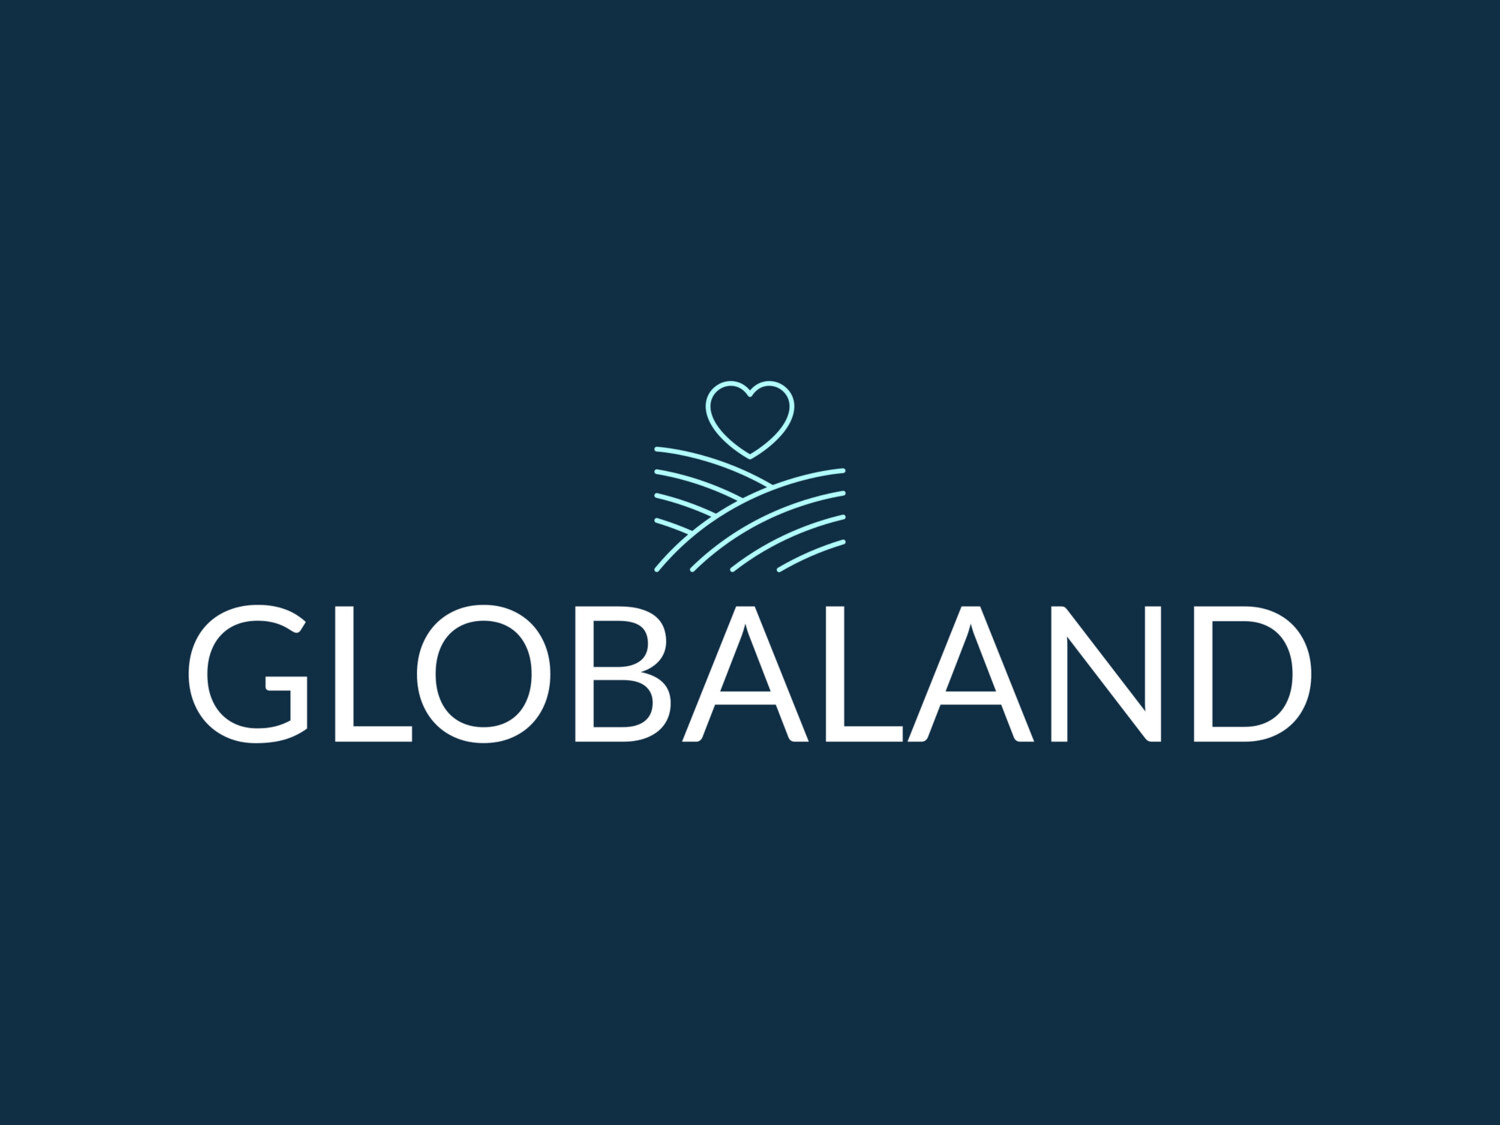 Globaland.com